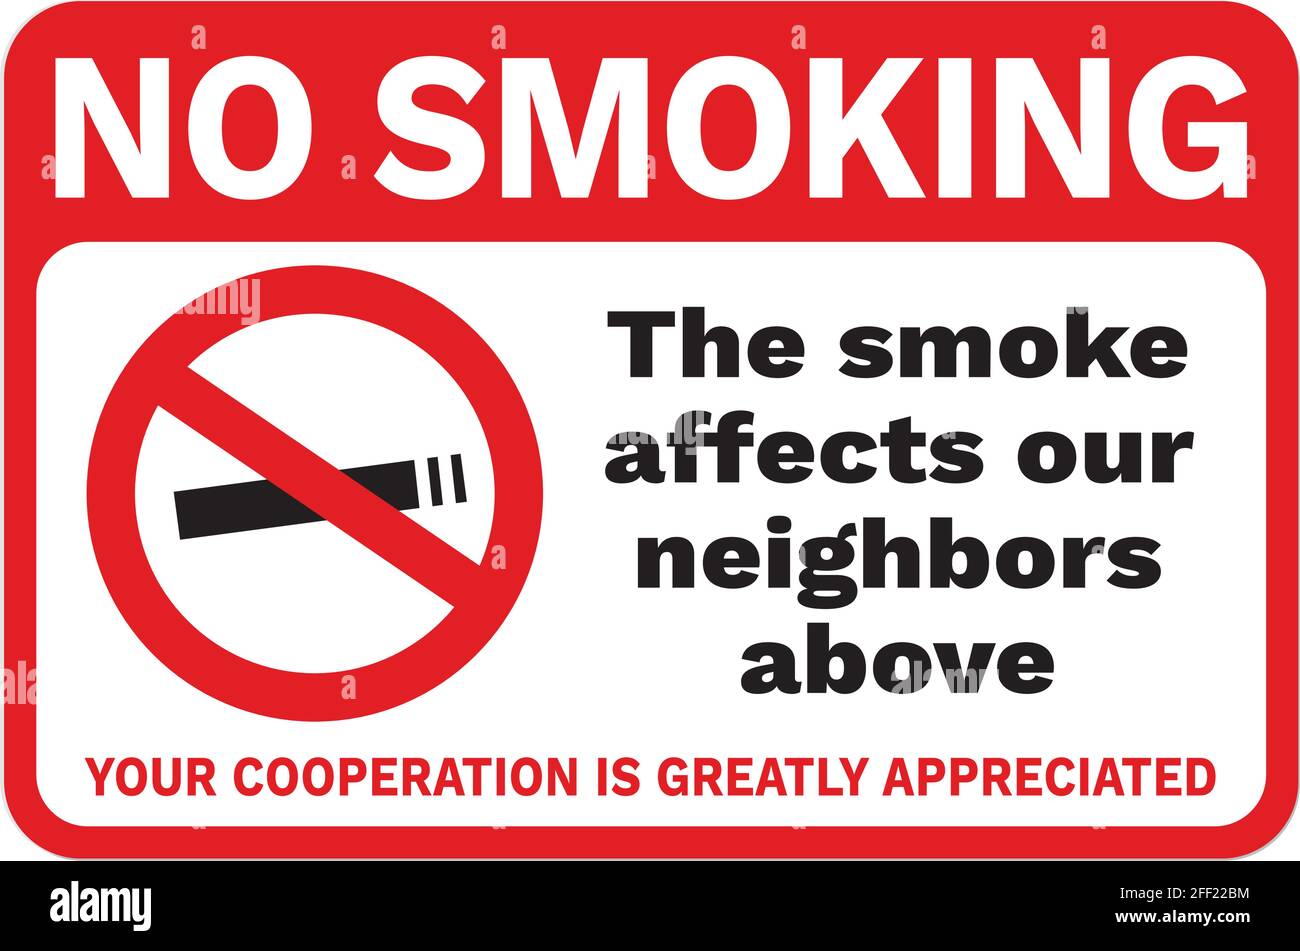 Affiche ou affiche non-fumeurs. La zone horizontale rouge et blanche affiche la cigarette barrée et le texte « interdiction de fumer. La fumée affecte nos voisins. Votre coo Illustration de Vecteur